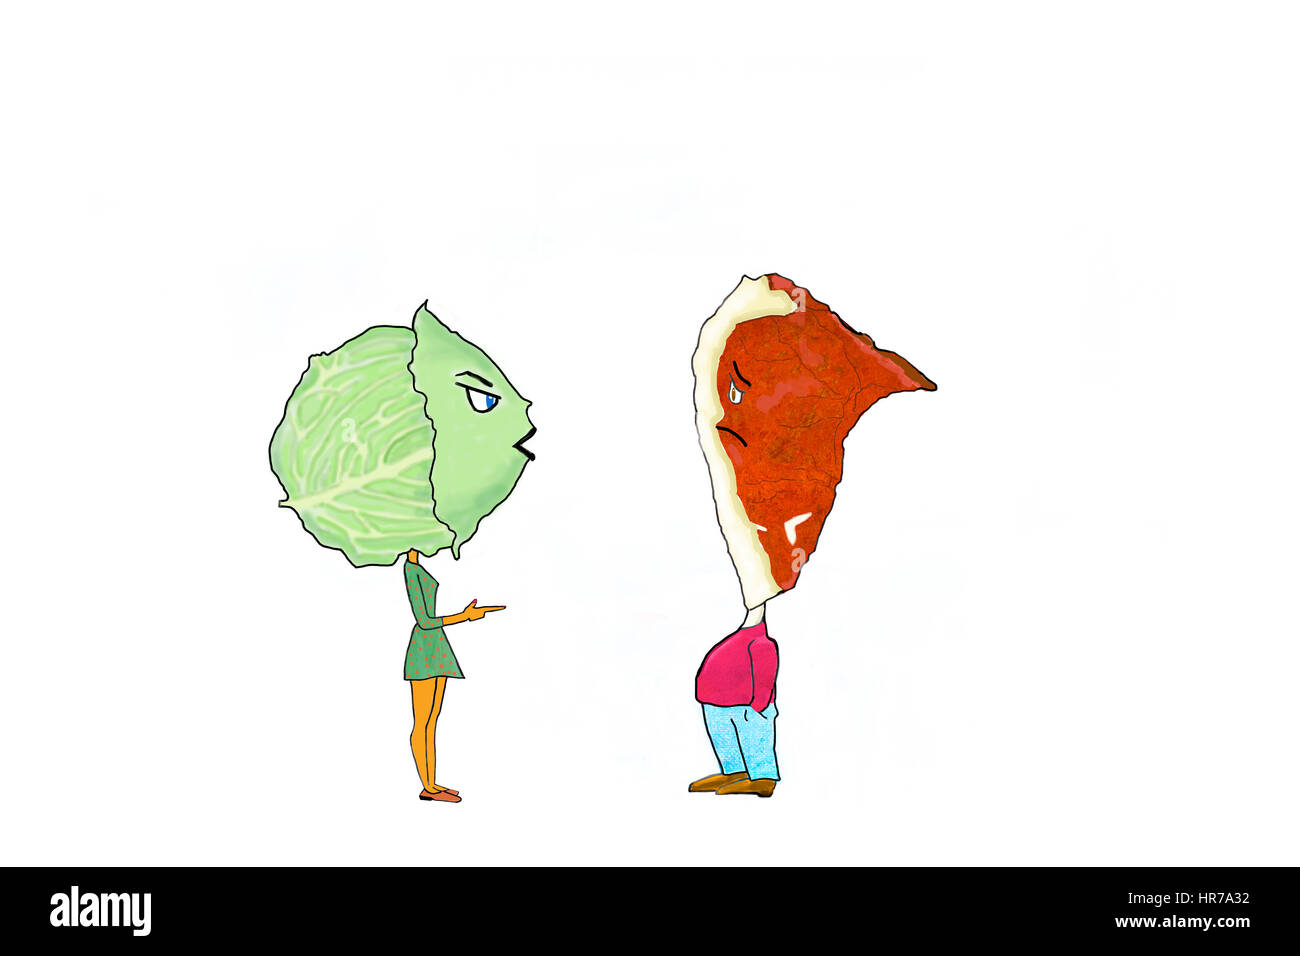 Une illustration d'une femme à tête de chou d'une côtelette de porc et l'homme de tête. Concept alimentation saine et d'une mauvaise alimentation. Banque D'Images